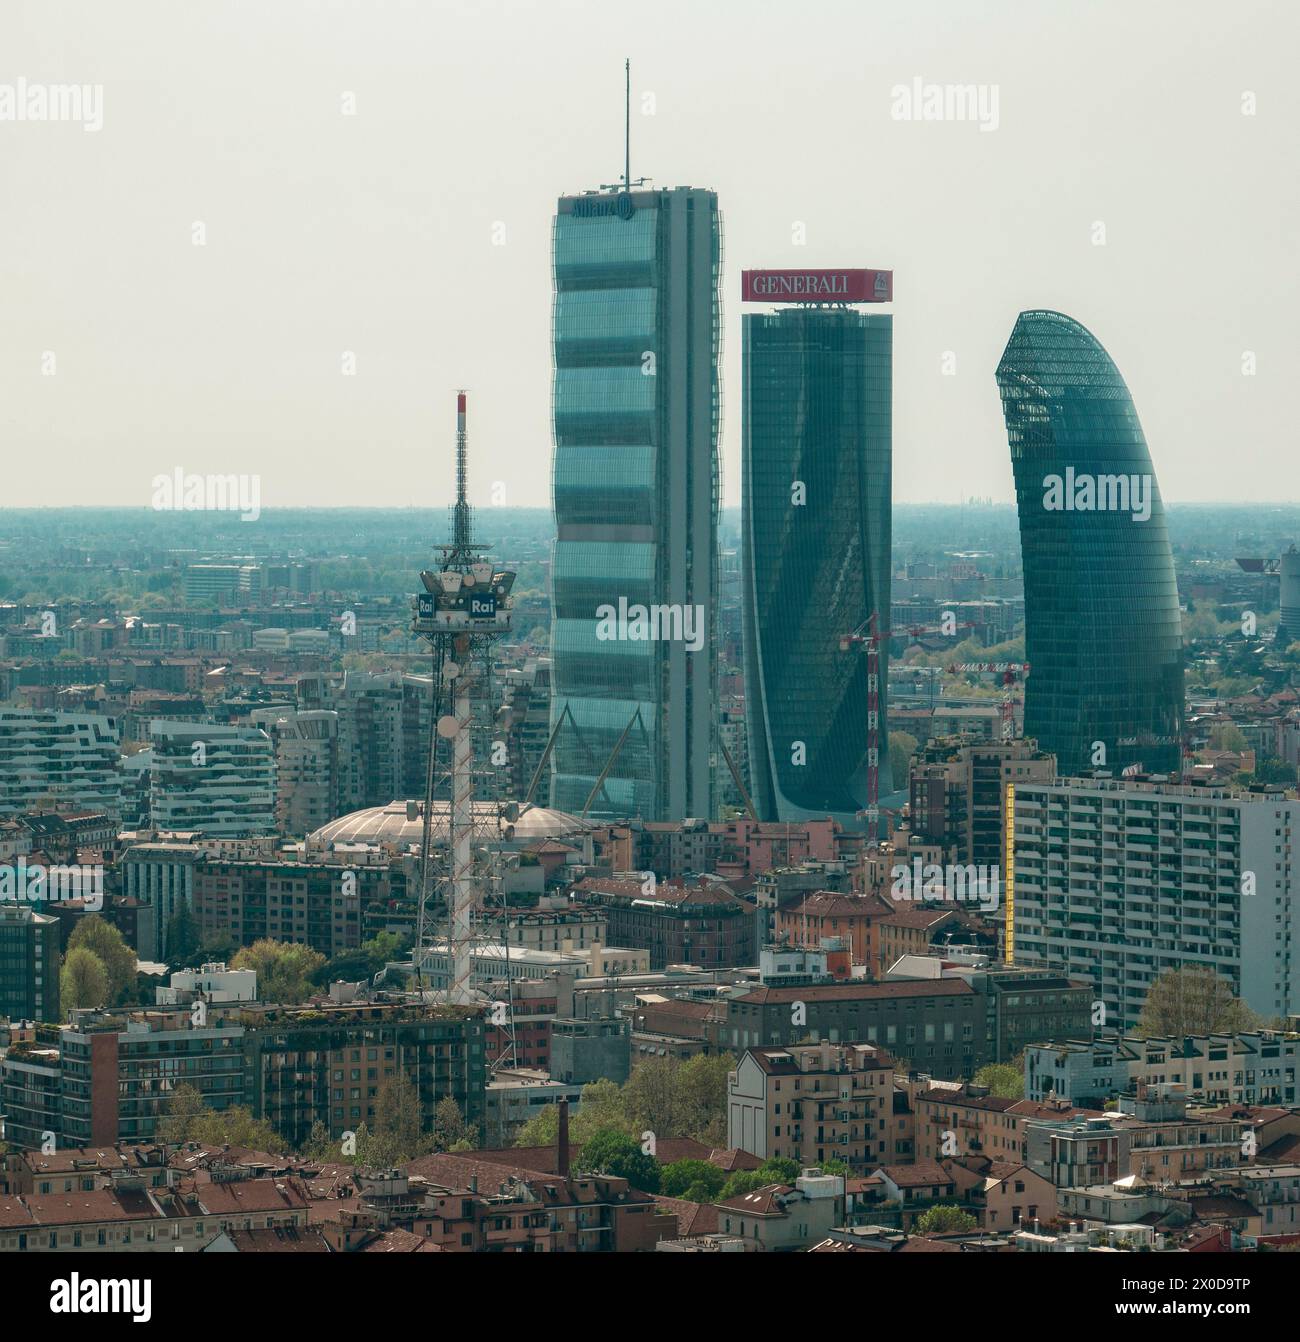 Aus der Vogelperspektive des CityLife Parks mit den drei Türmen: Der Straight One (Allianz Tower), der Twisted One (Generali Tower), der Curved One, Mailand, italien Stockfoto